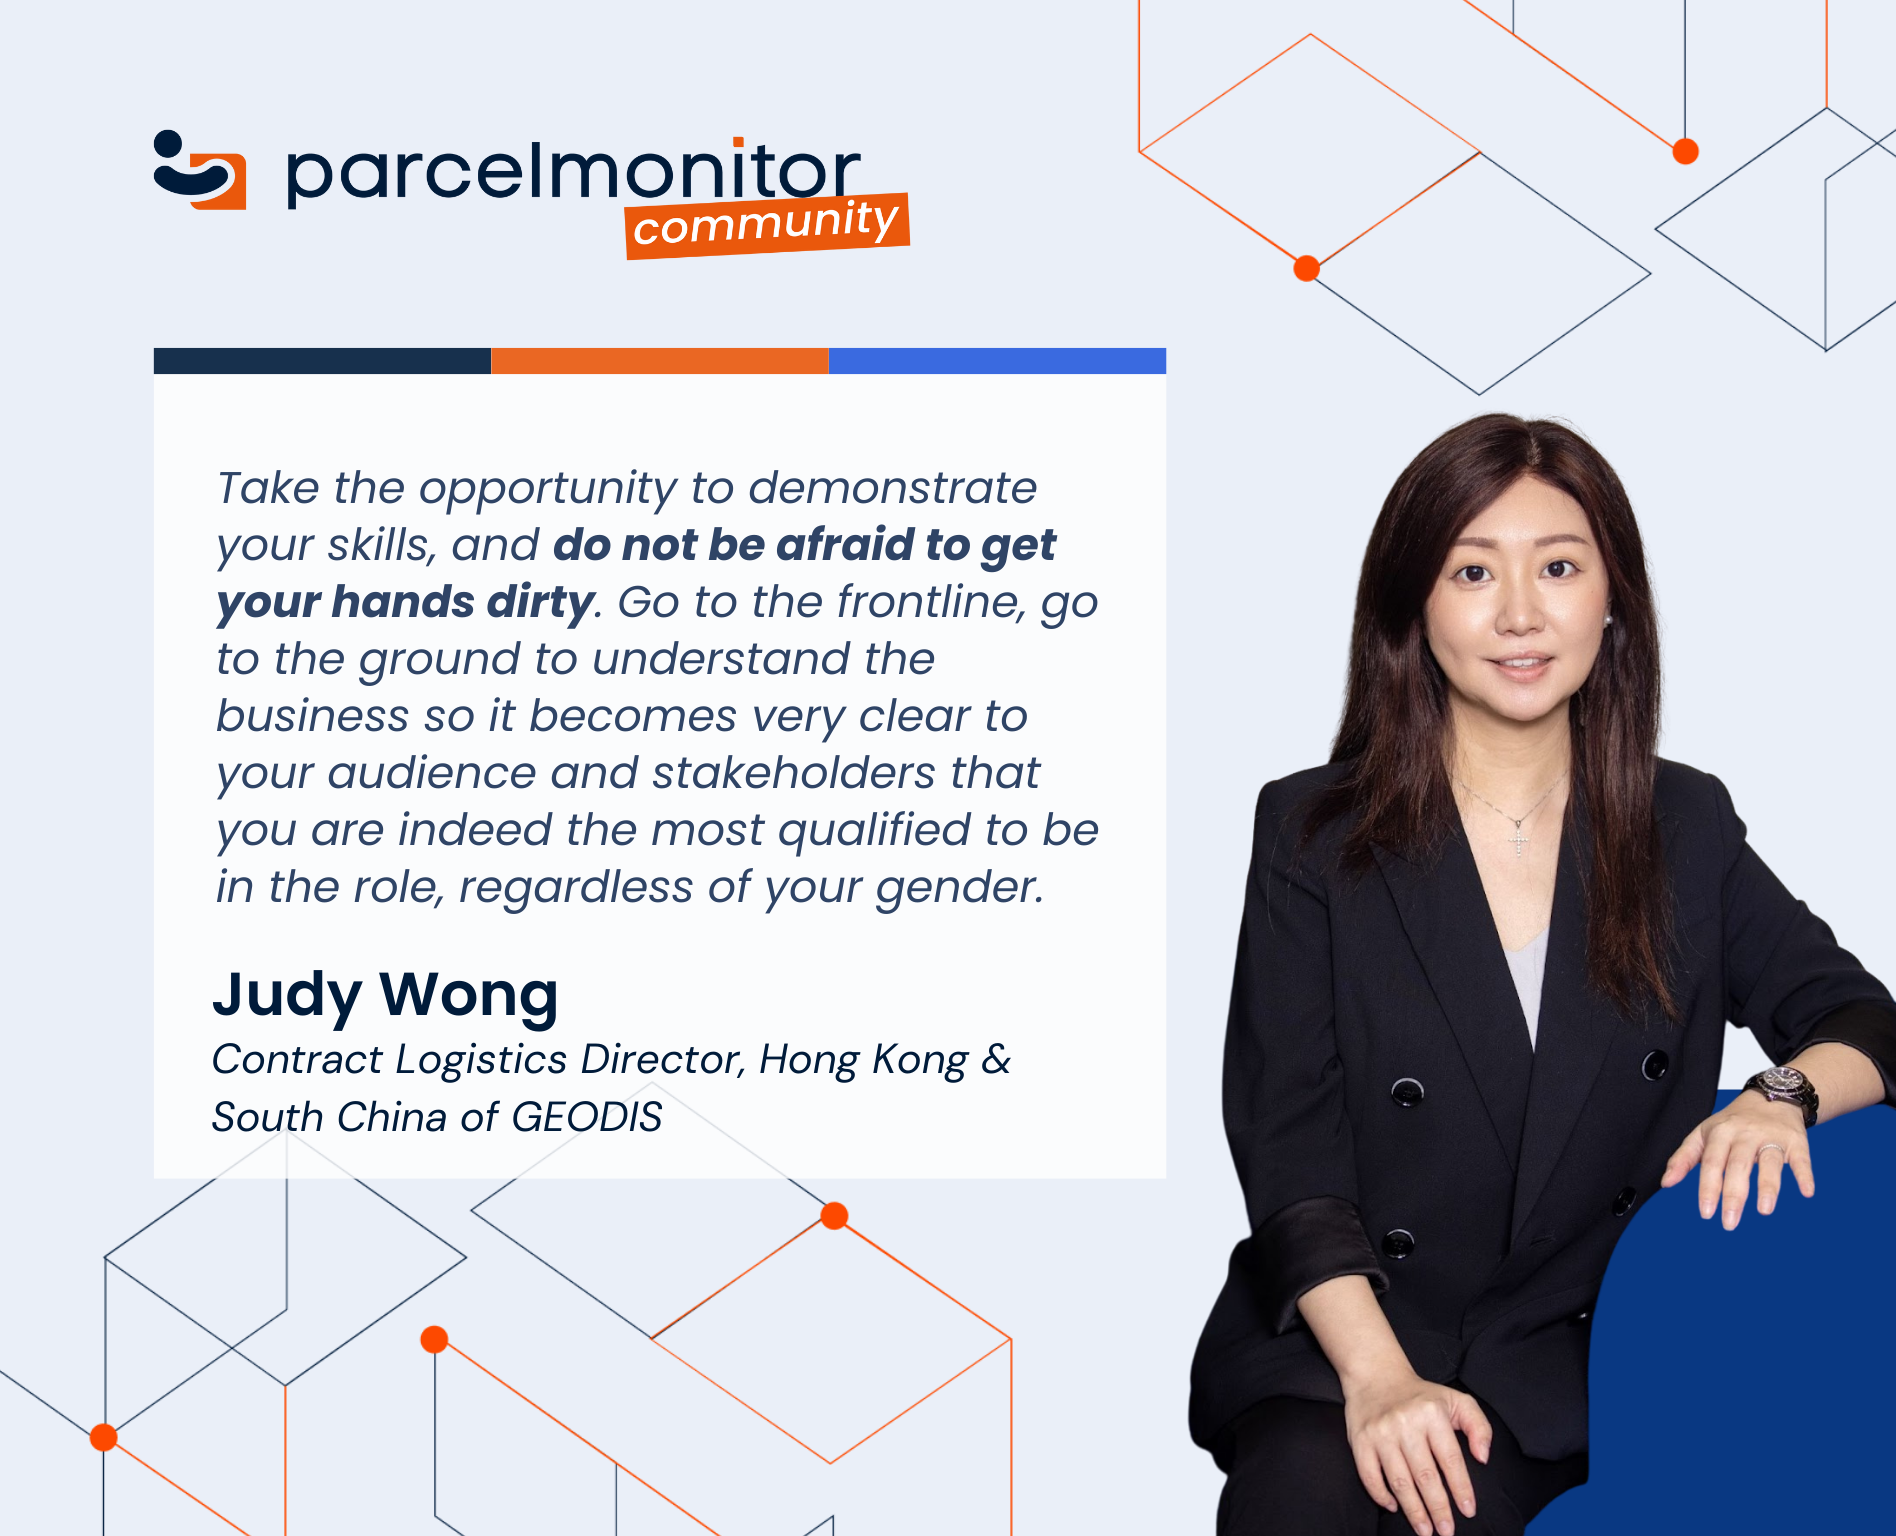 Judy Wong, Contract Logistics Director, Hong Kong & South China at GEODIS
